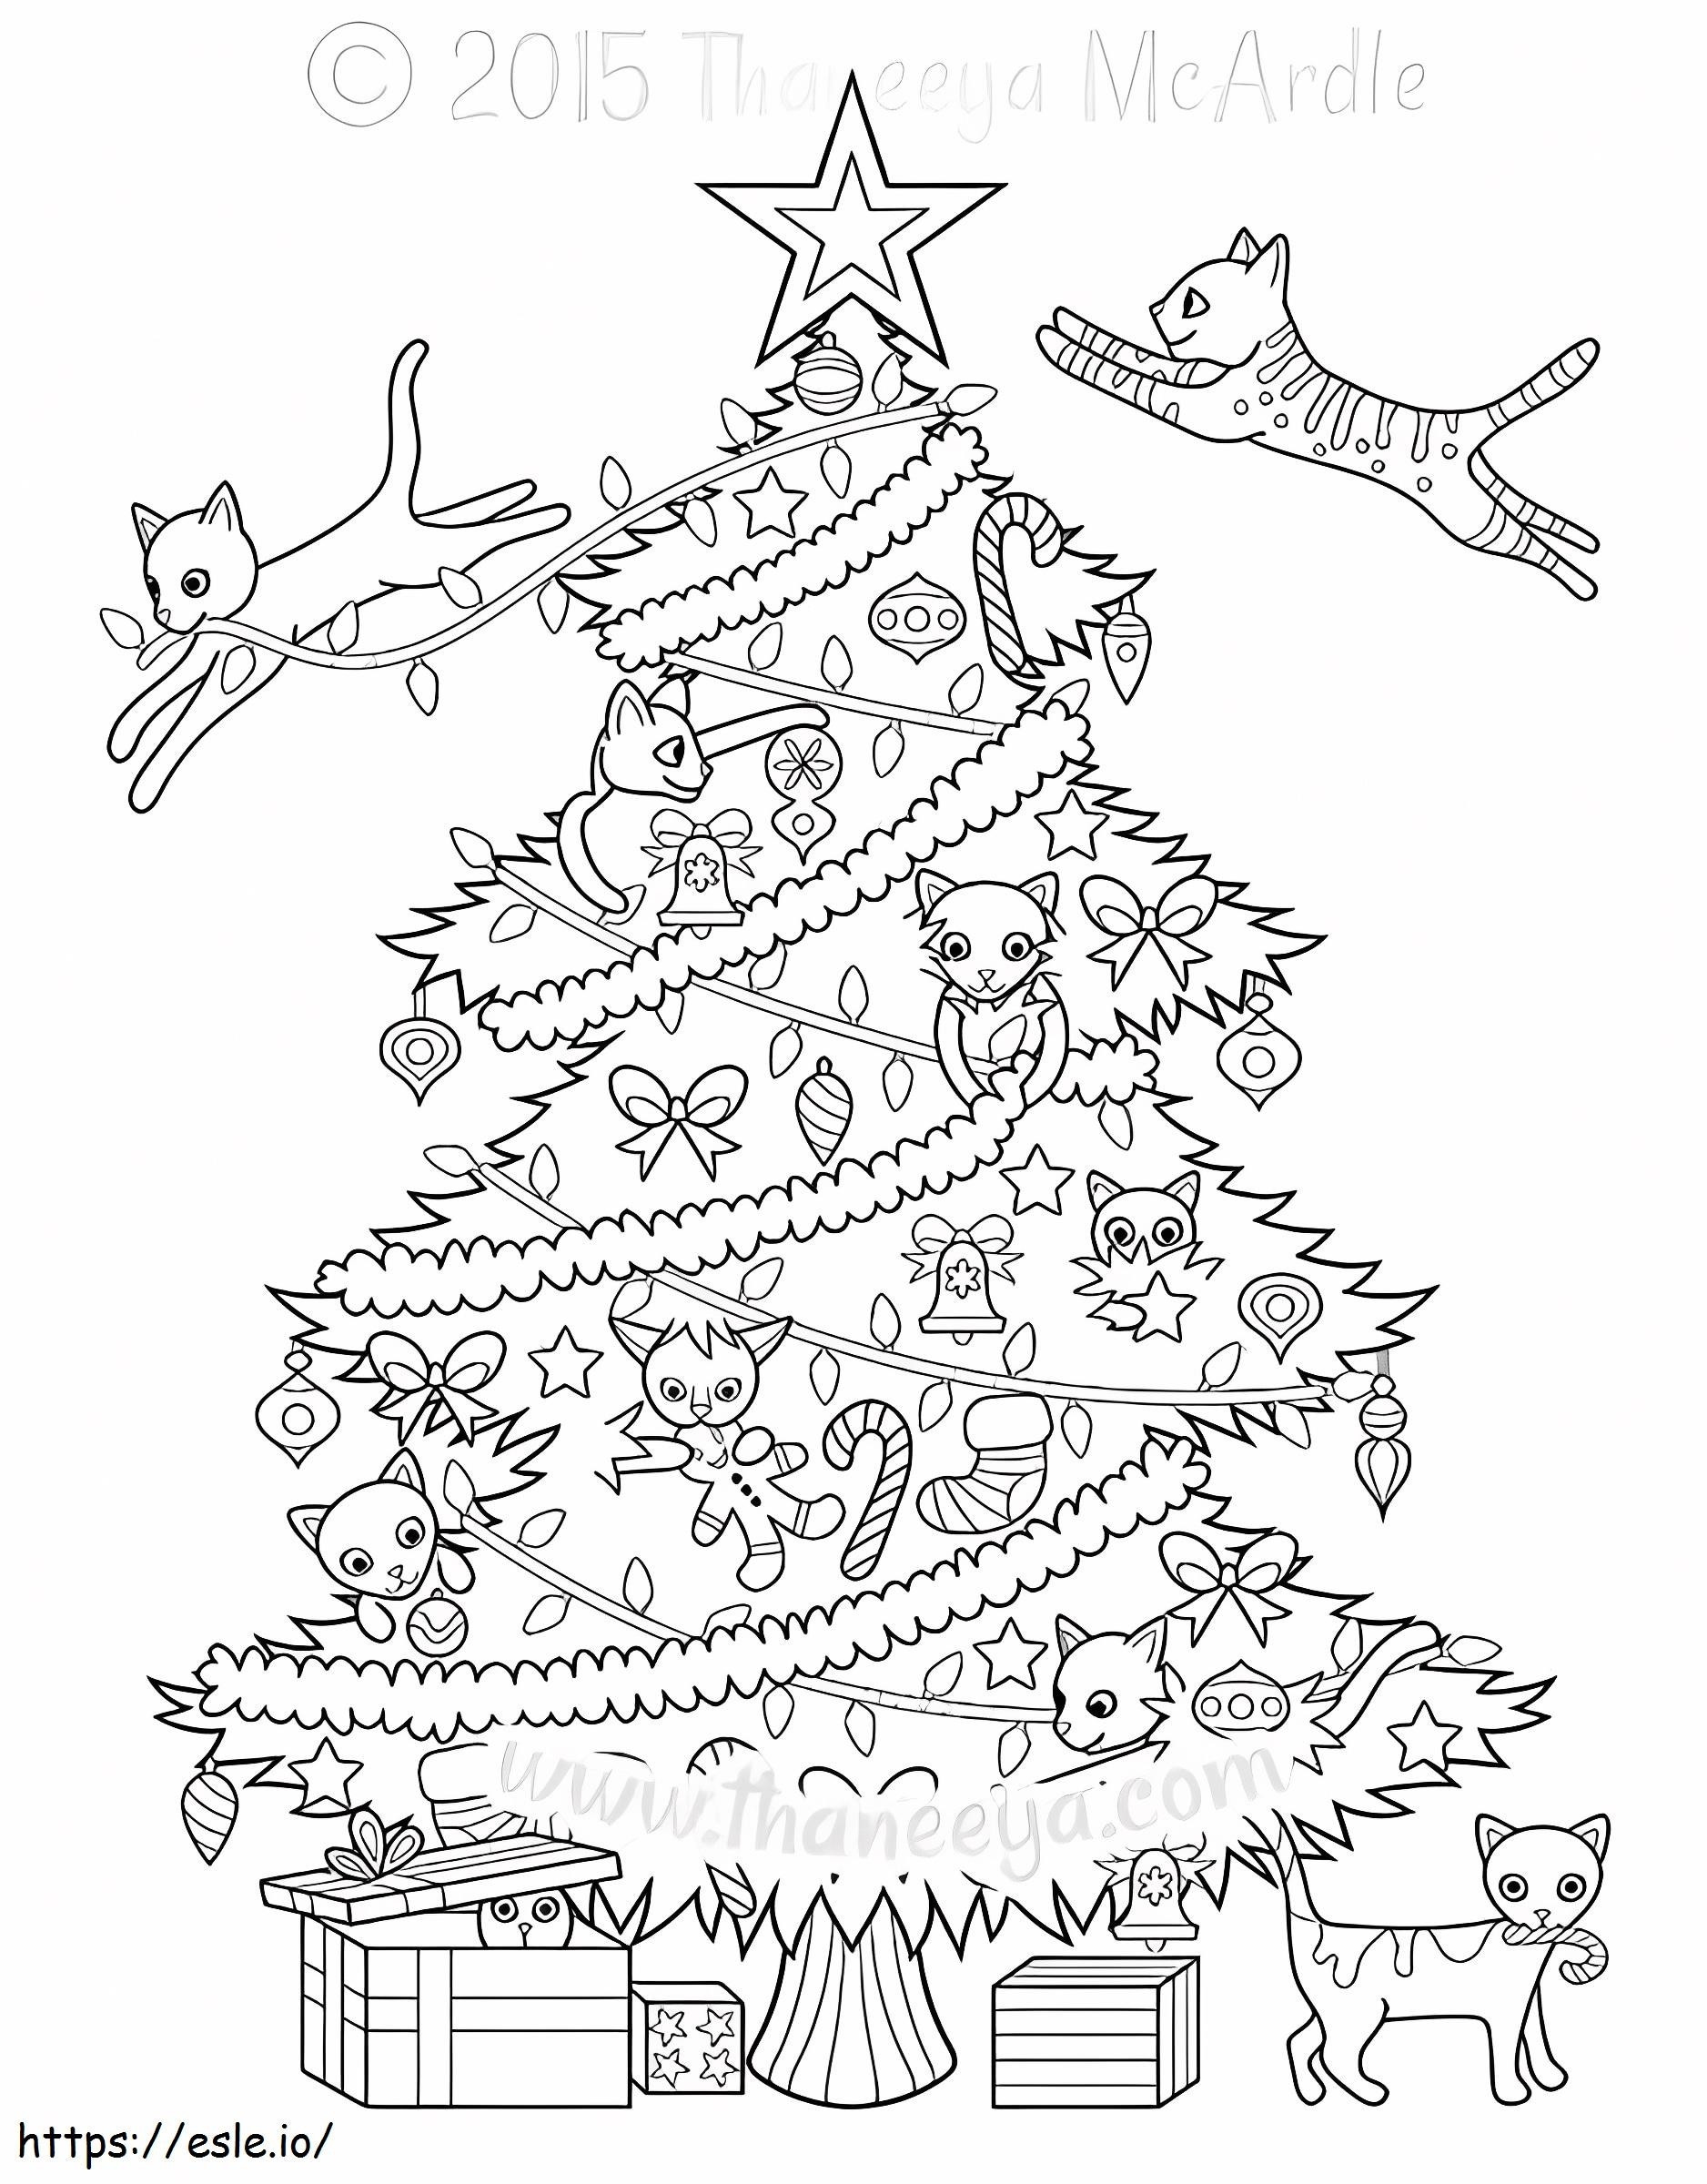 1541724239 Weihnachtsbaumkatzen von Thaneeya Mcardle ausmalbilder